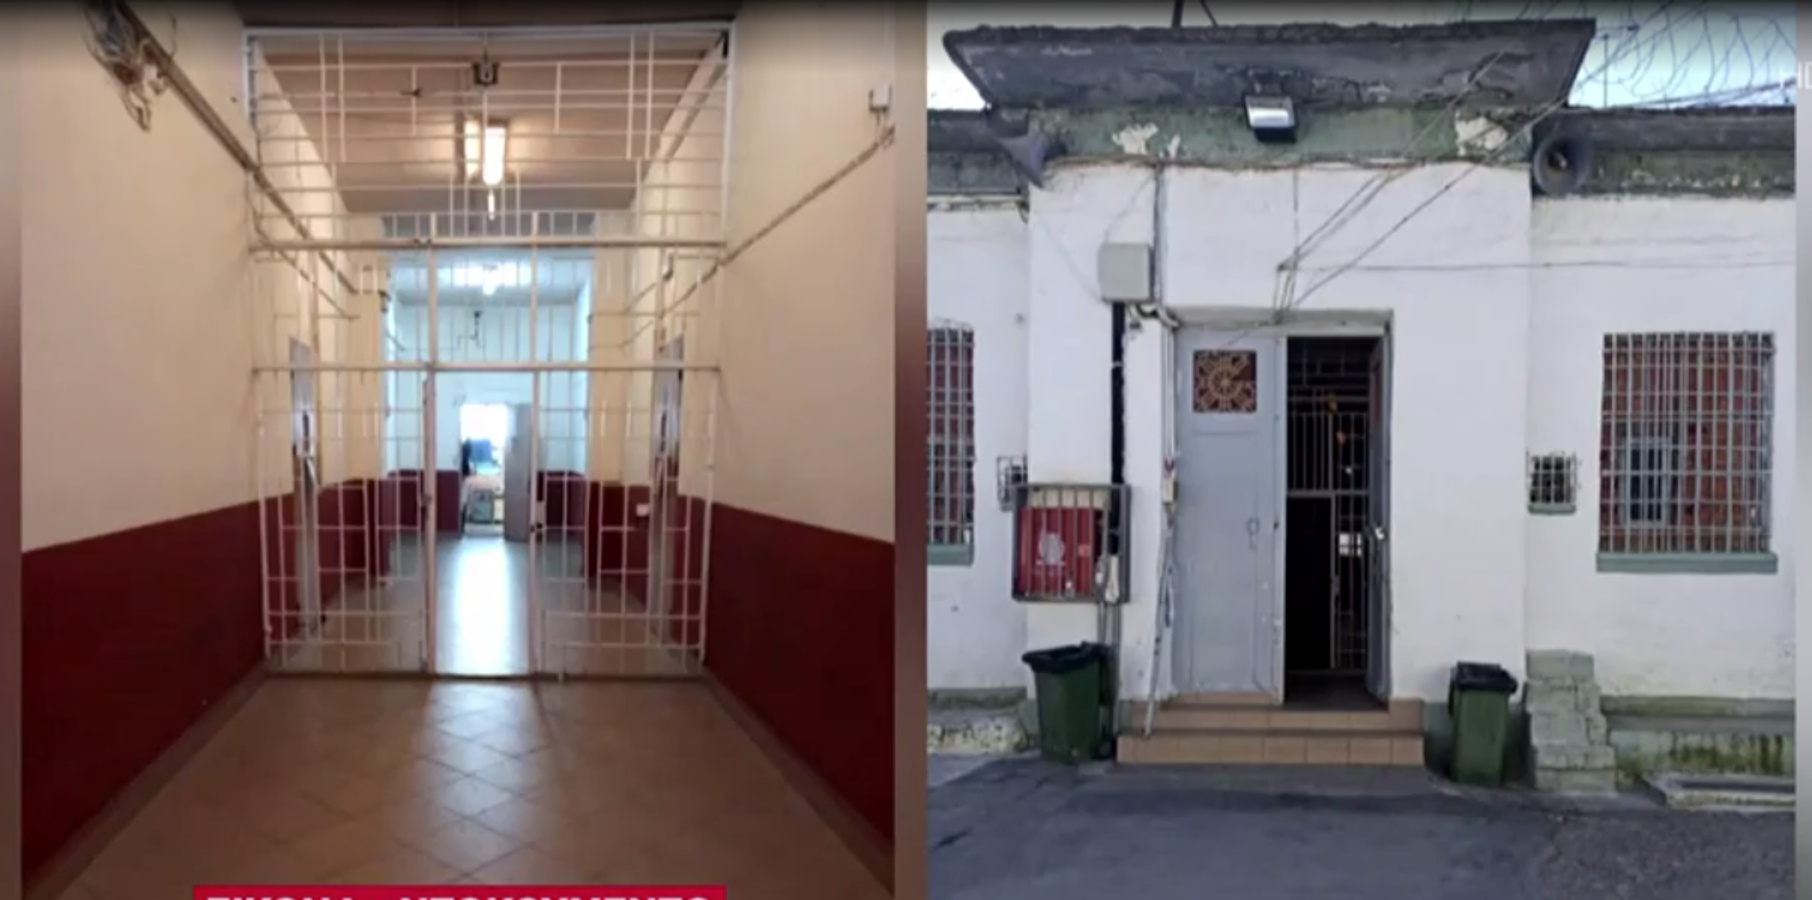 Δημήτρης Λιγνάδης: Αποκαλύψεις για τις πρώτες μέρες στη φυλακή (video)